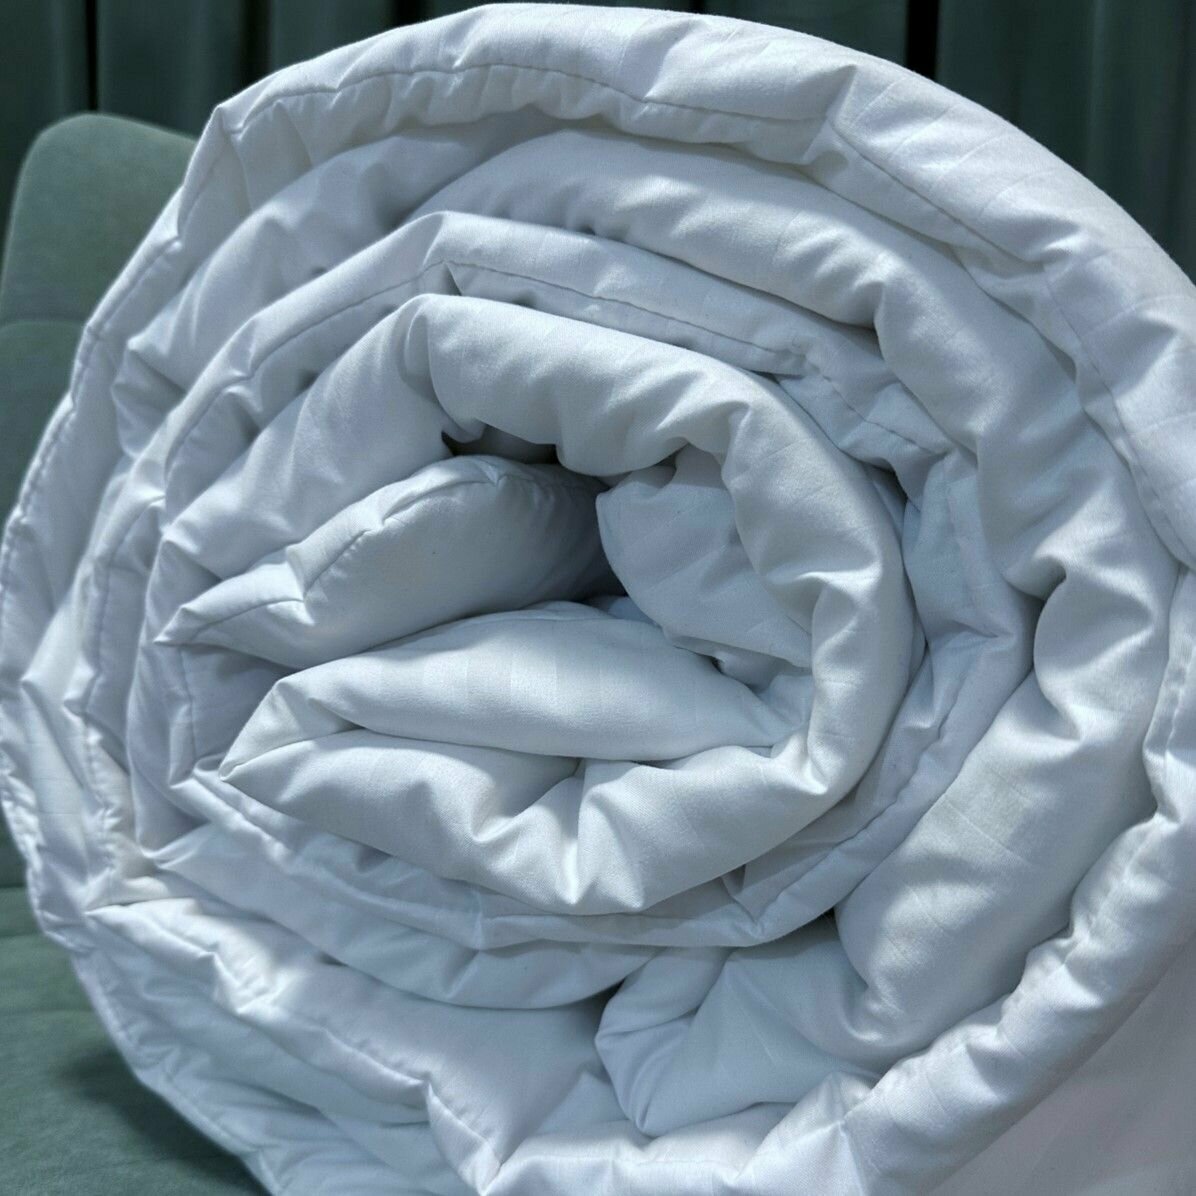 Комплект 2 в 1 Одеяло всесезонное евро 2 спальное + подушка 70х70 см, цена от производителя, комплект из 2 шт